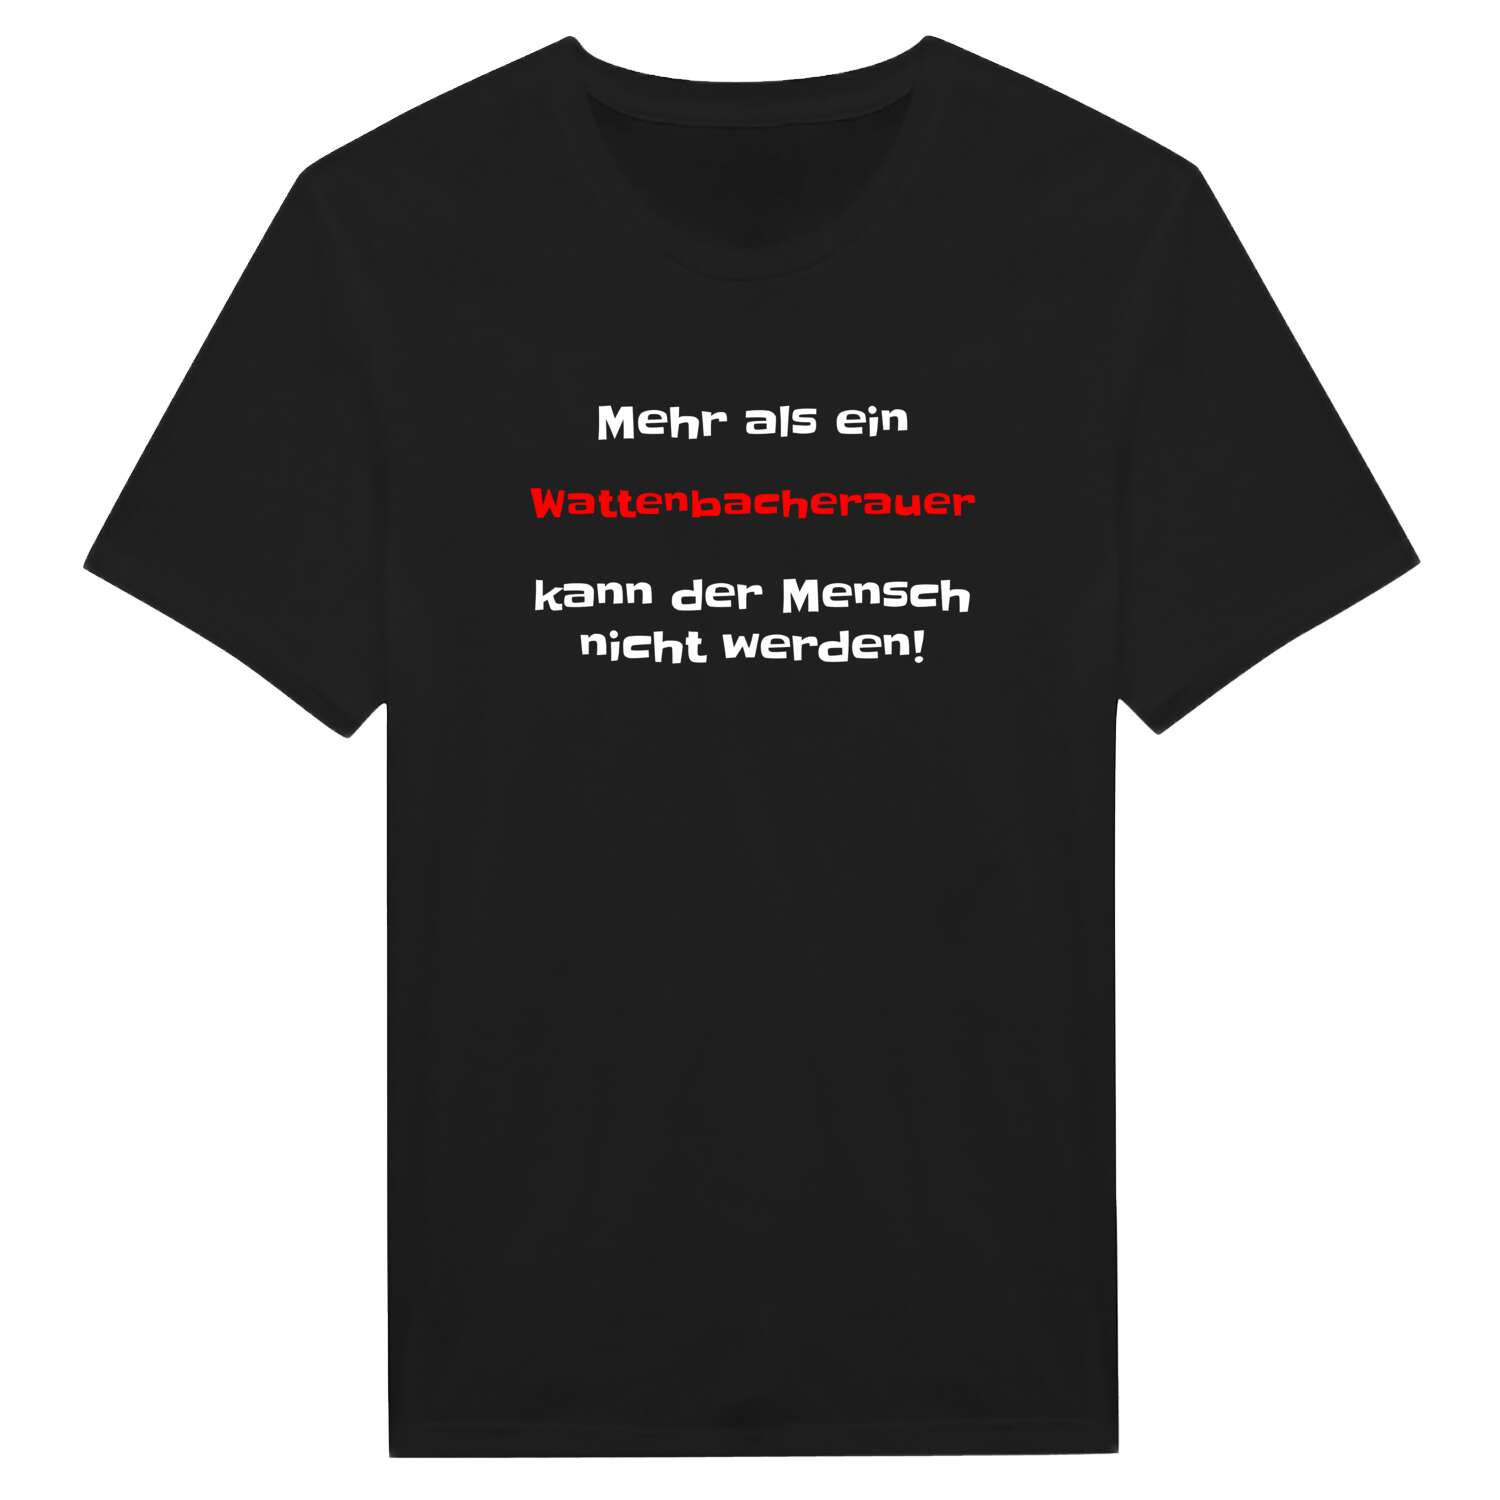 Wattenbacherau T-Shirt »Mehr als ein«